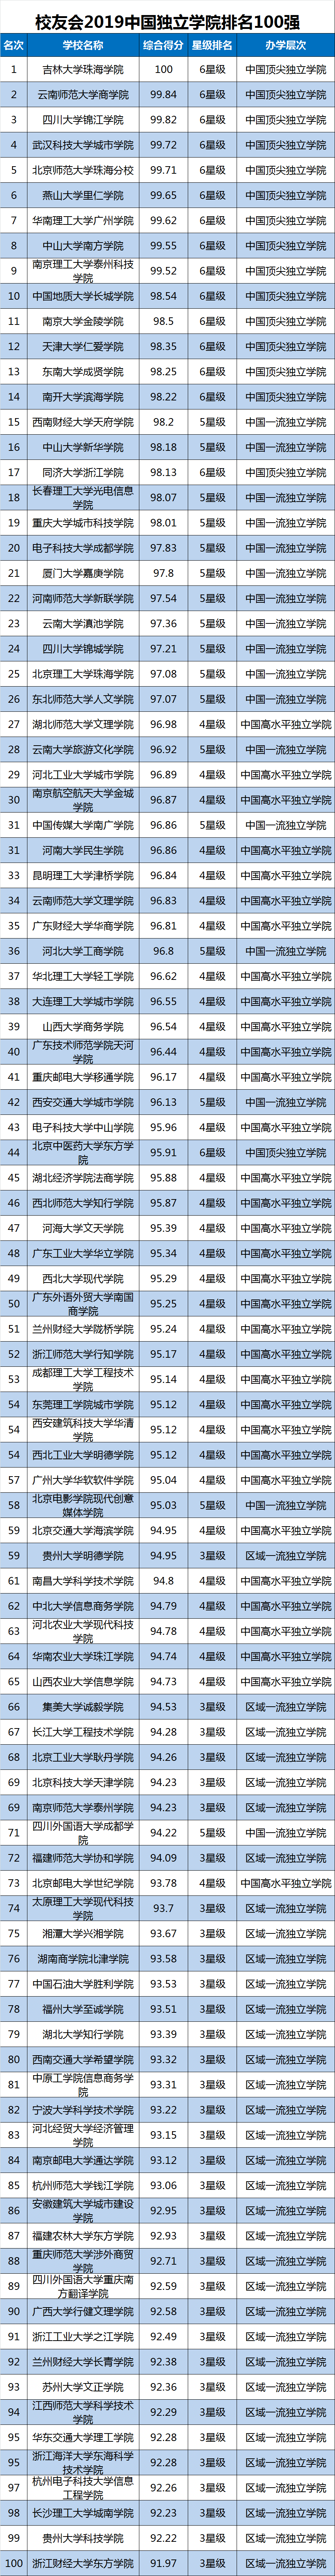 2019中国医学院校排行_2019中国医科大学排名发布,北京协和医学院第一